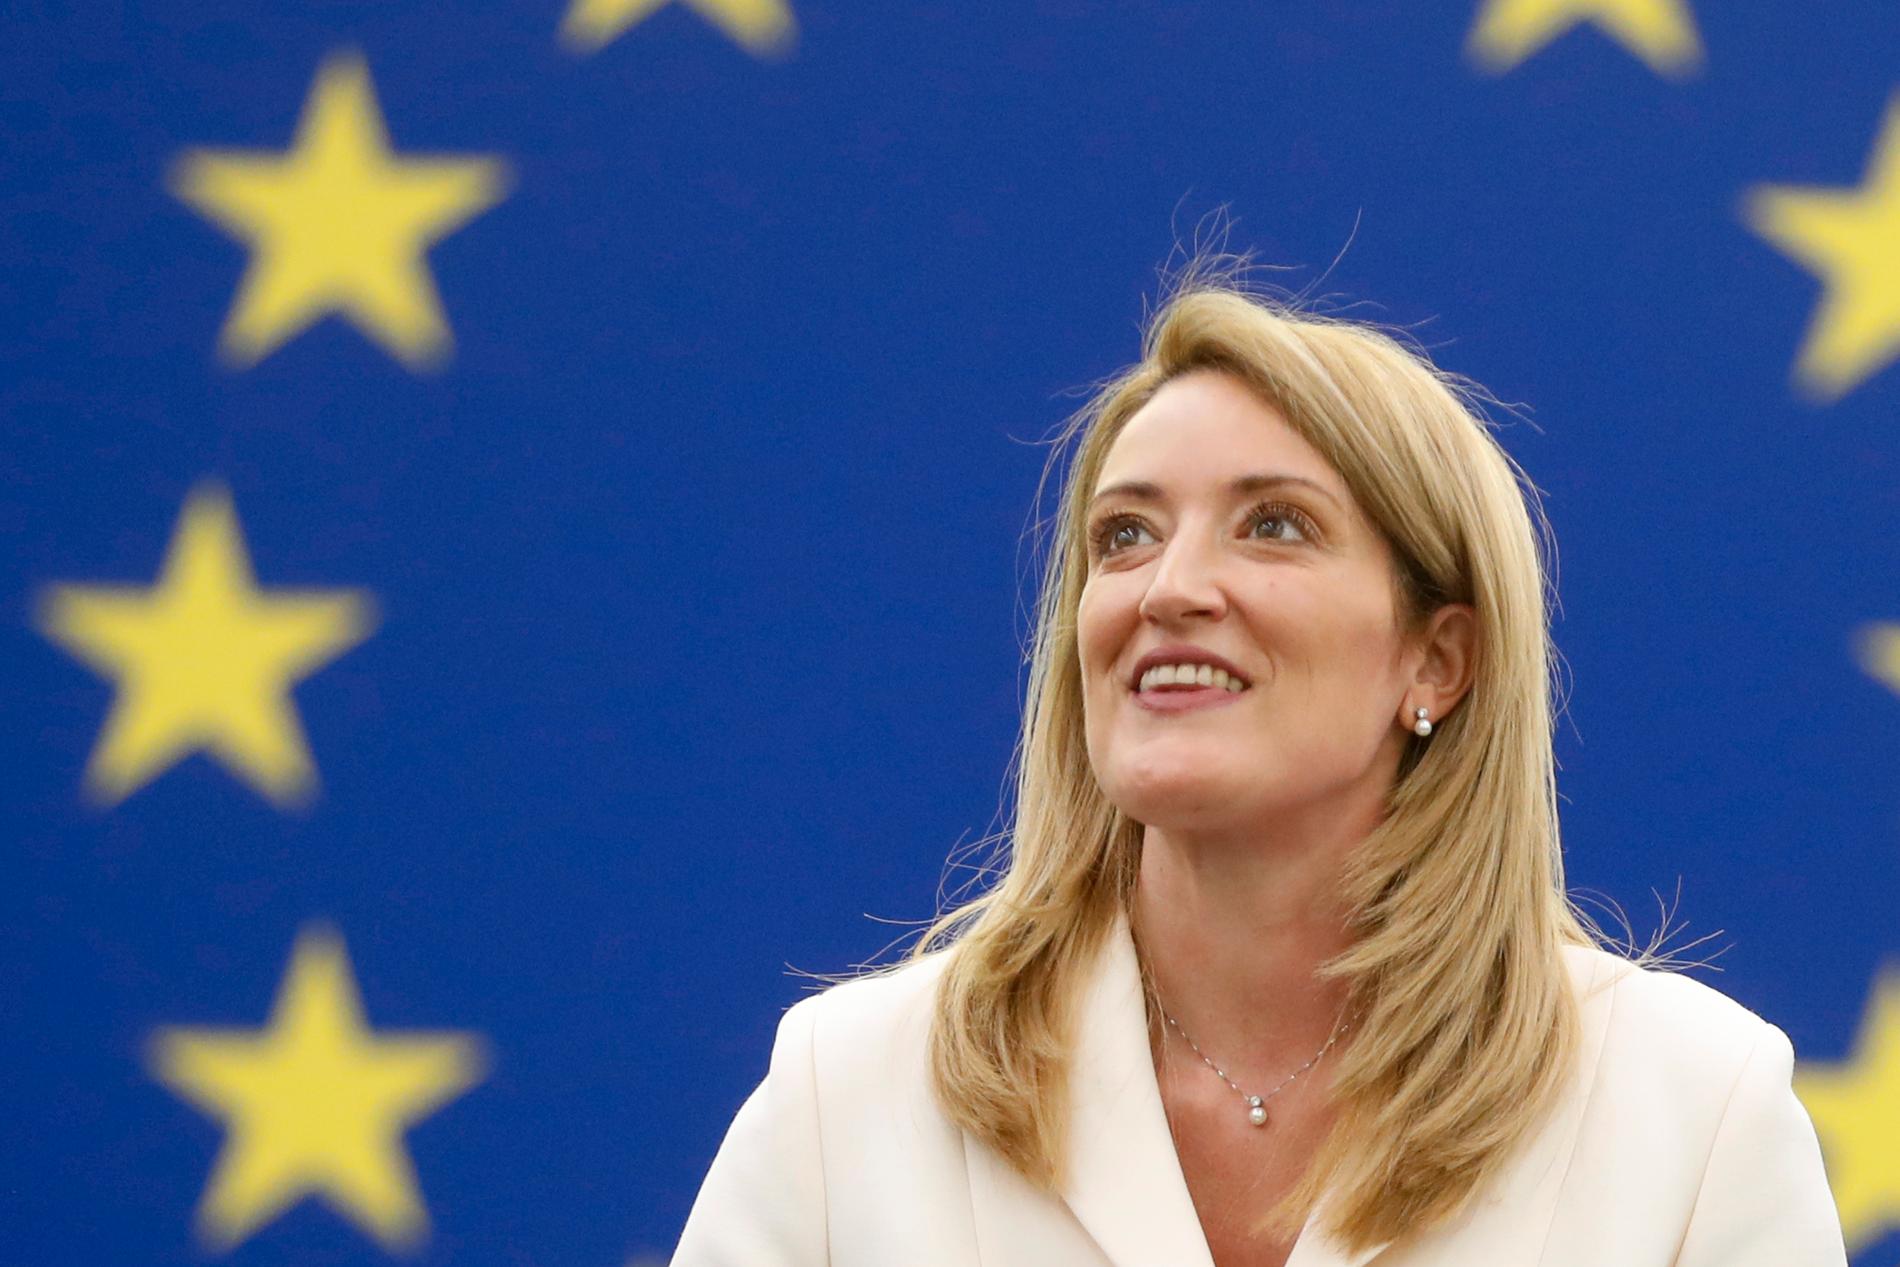 Roberta Metsola från konservativa Nationalistpartiet på Malta gläds efter att ha valts till talman i EU-parlamentet.